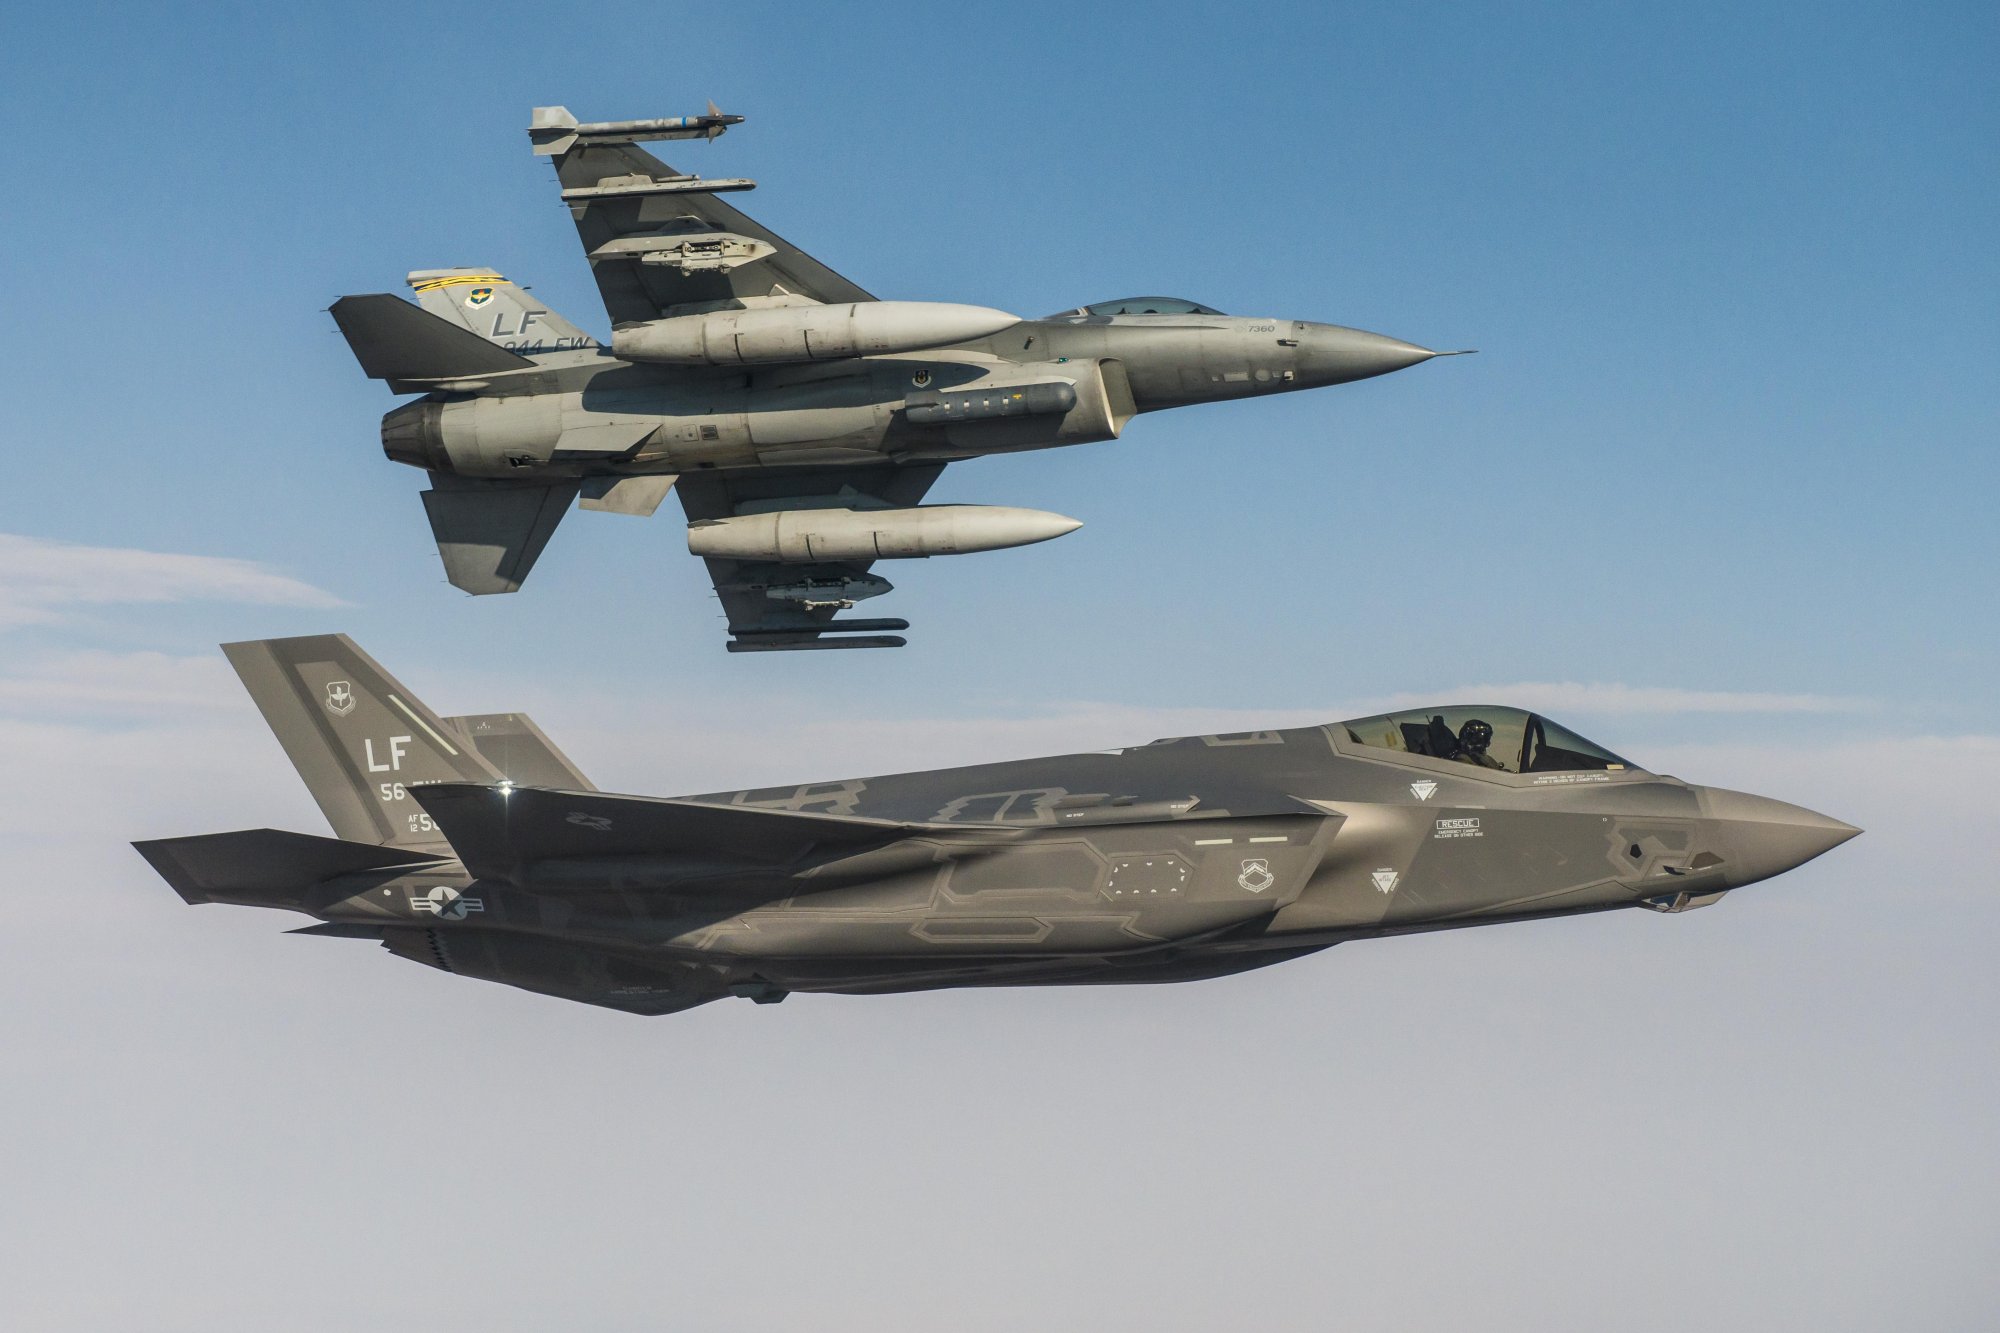  Τα… ενισχυμένα F-35, αντί για την ναυτική απειλή από την Τουρκία, την “περίεργη” τρομοκρατία και την Κίνα.